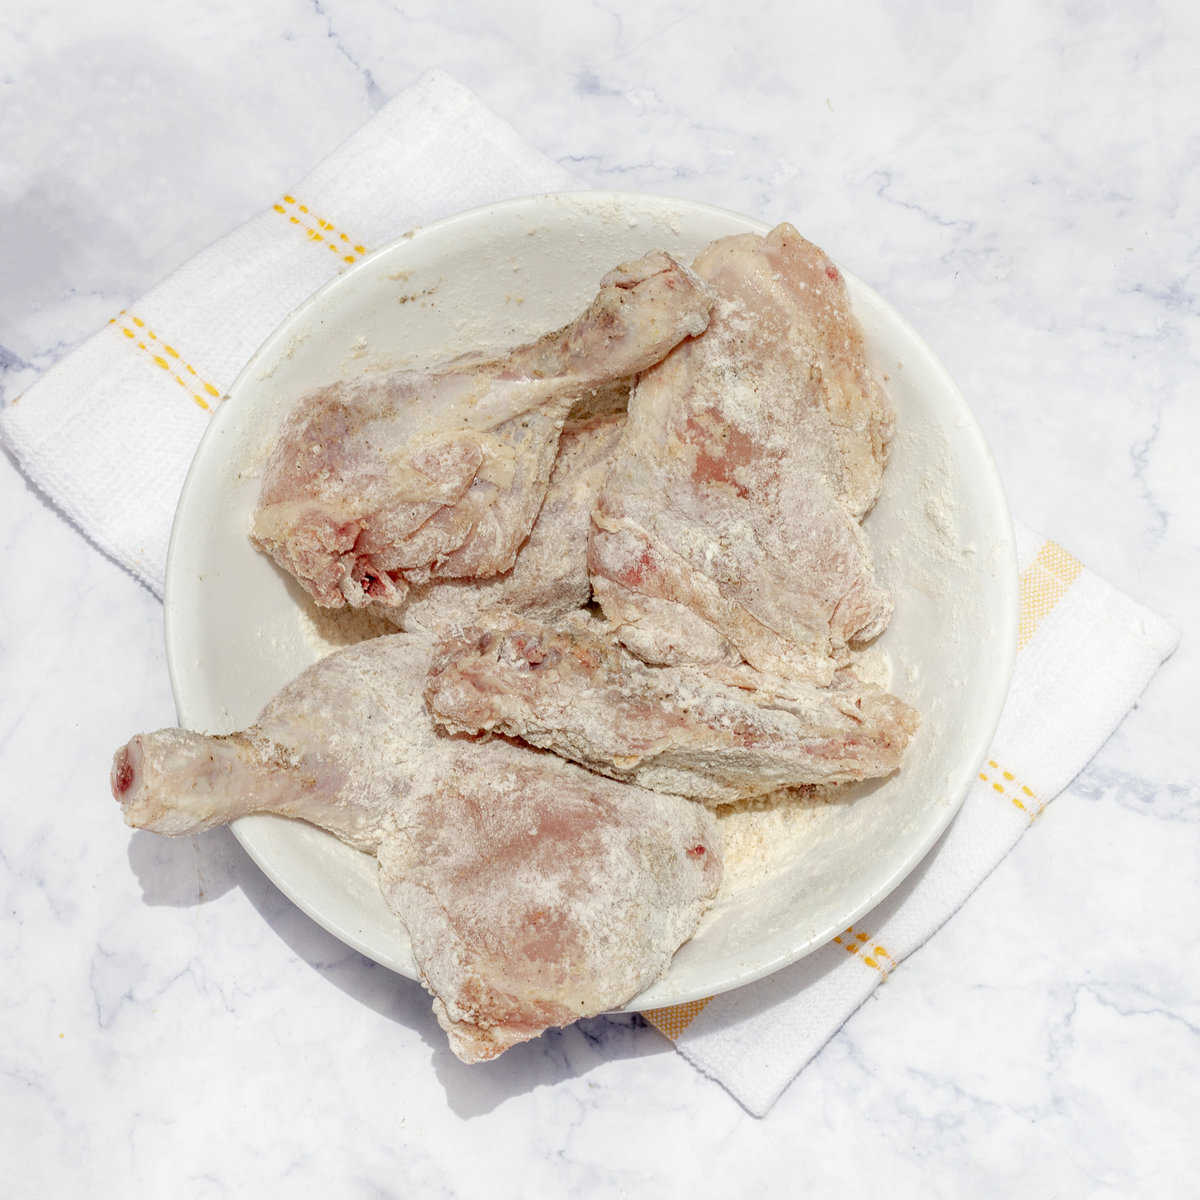 Dredge chicken thighs in flour